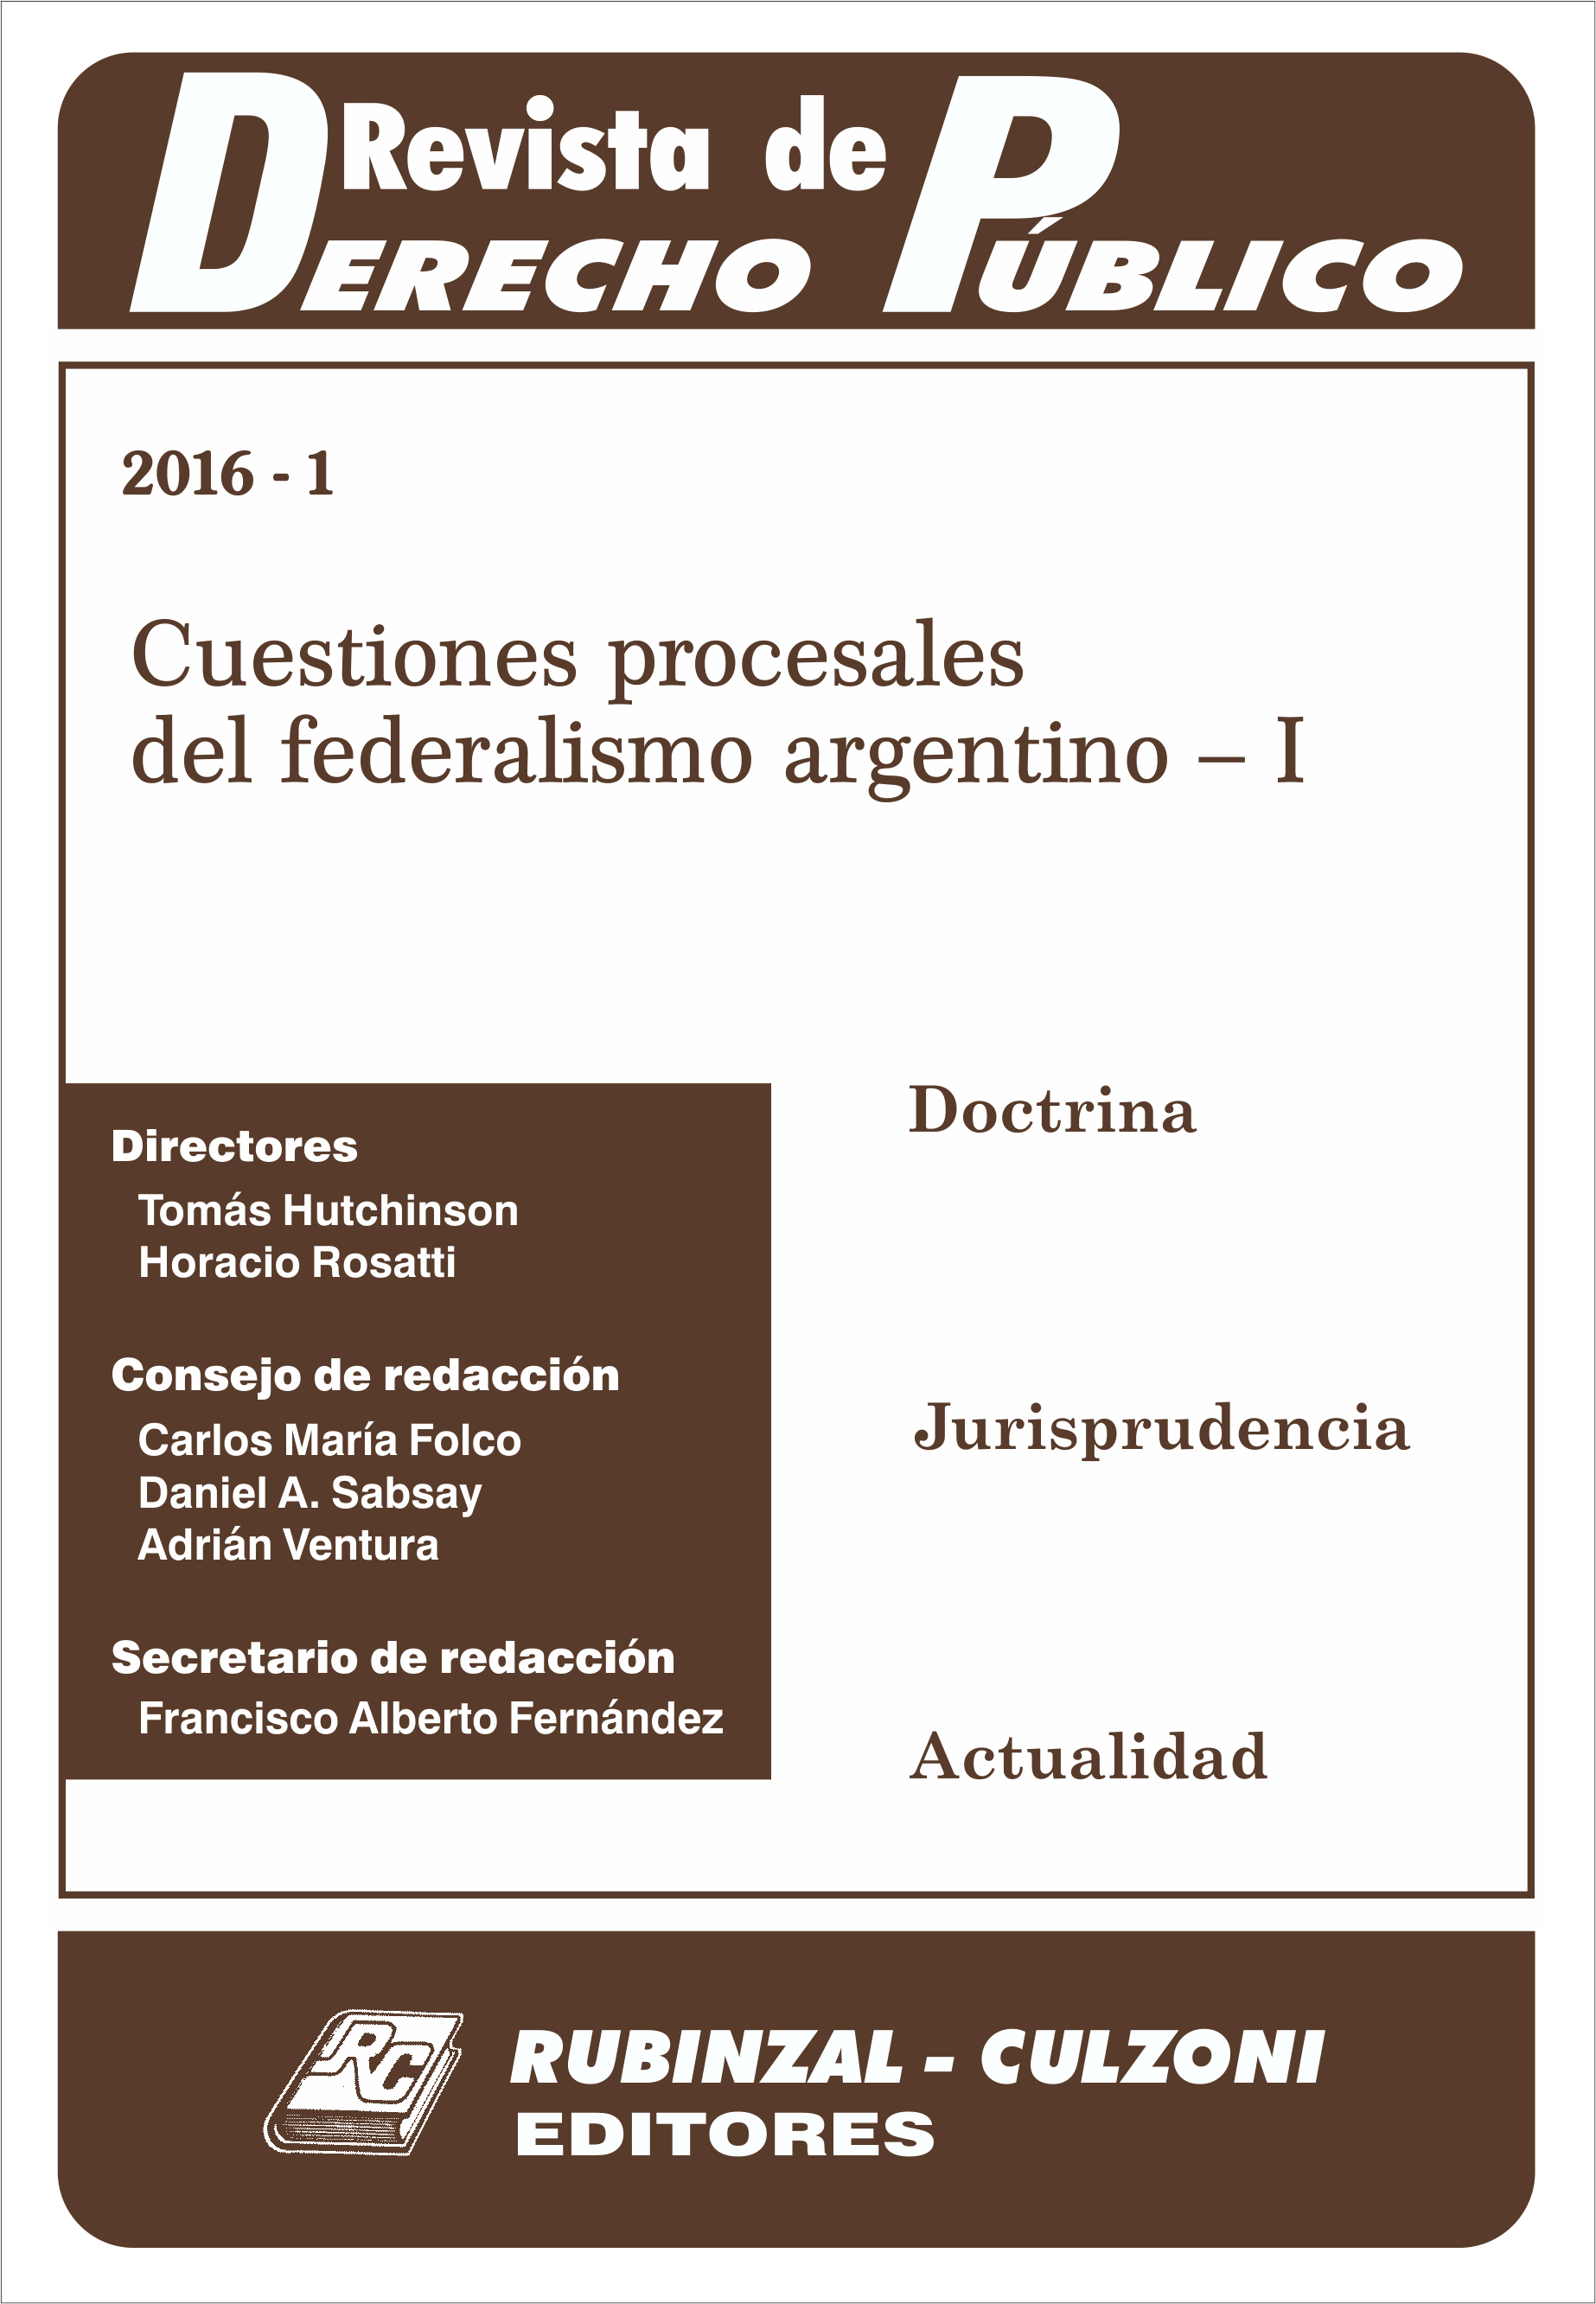 Revista de Derecho Público - Cuestiones procesales del federalismo argentino - I